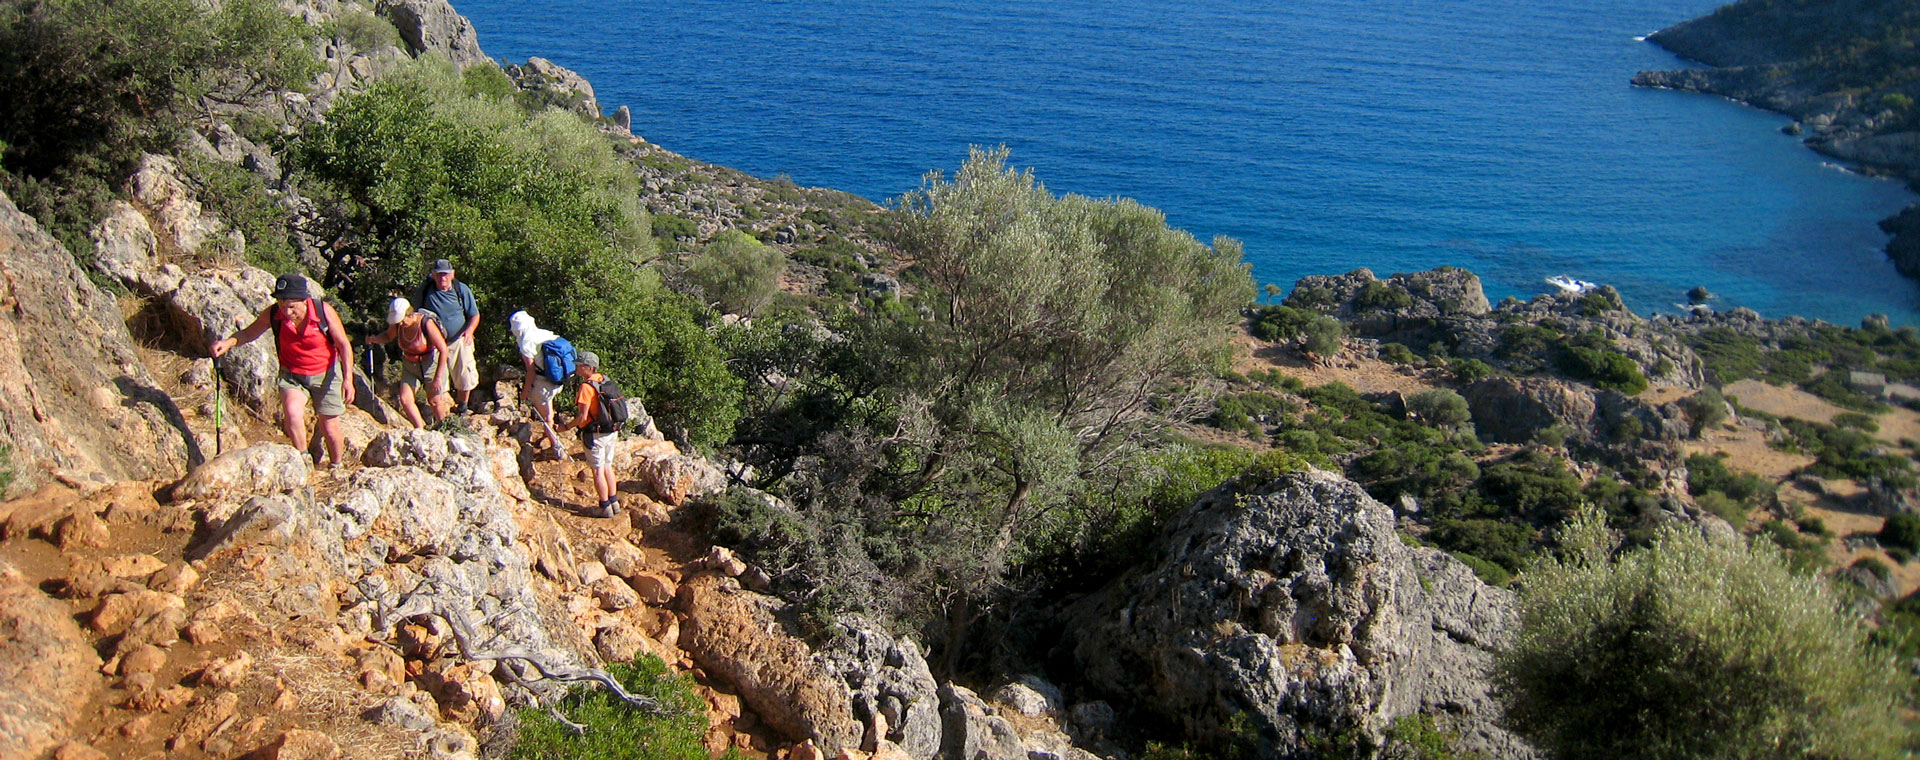 Crète, île aux merveilles